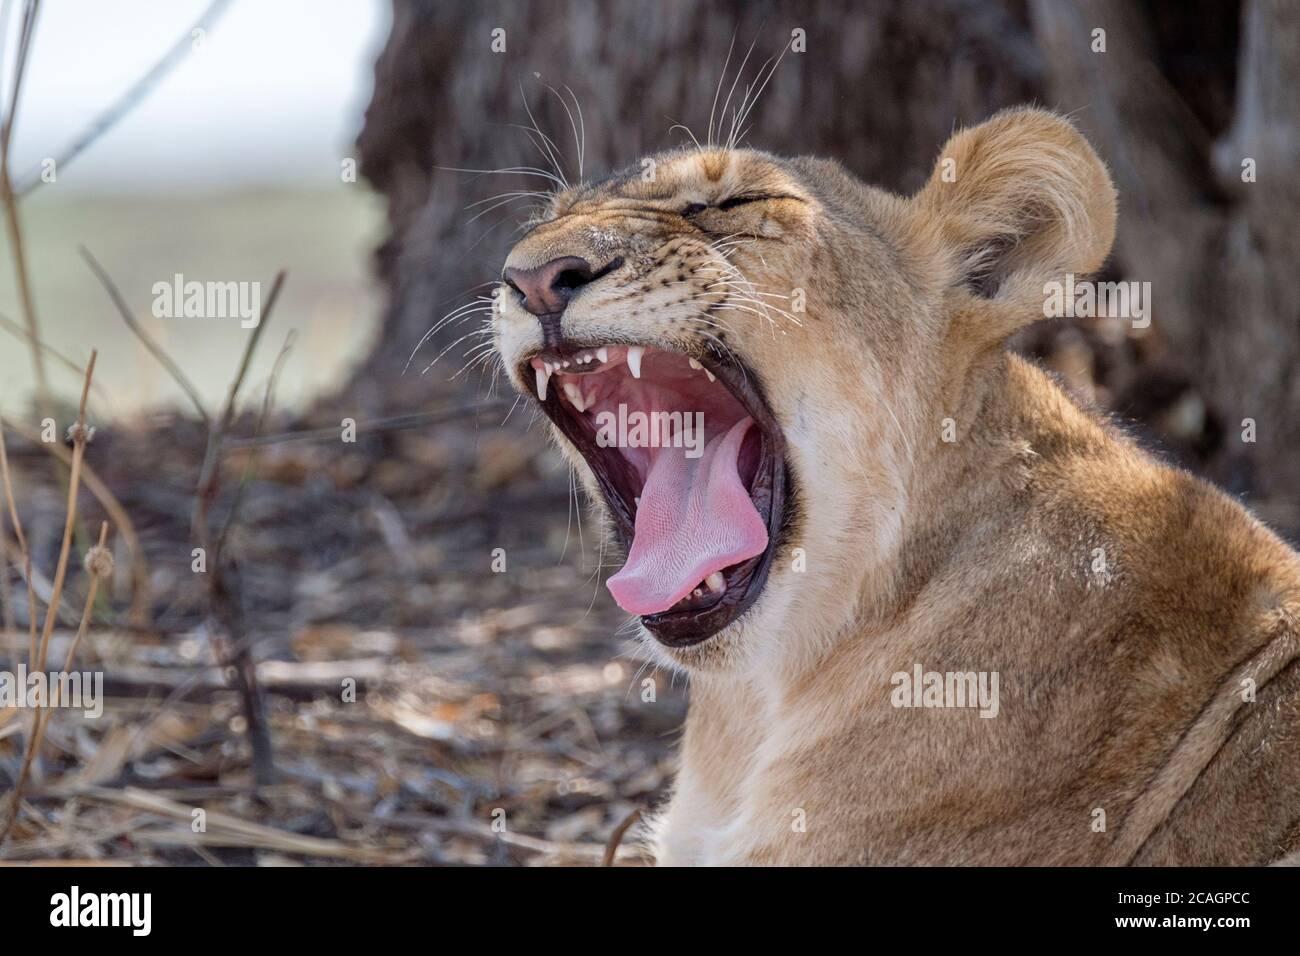 Leone Cub, Panthera leo, primo piano con denti pericolosi con bocca aperta che mostra denti e lingua. South Luangwa National Park, Zambia, Africa. Foto Stock